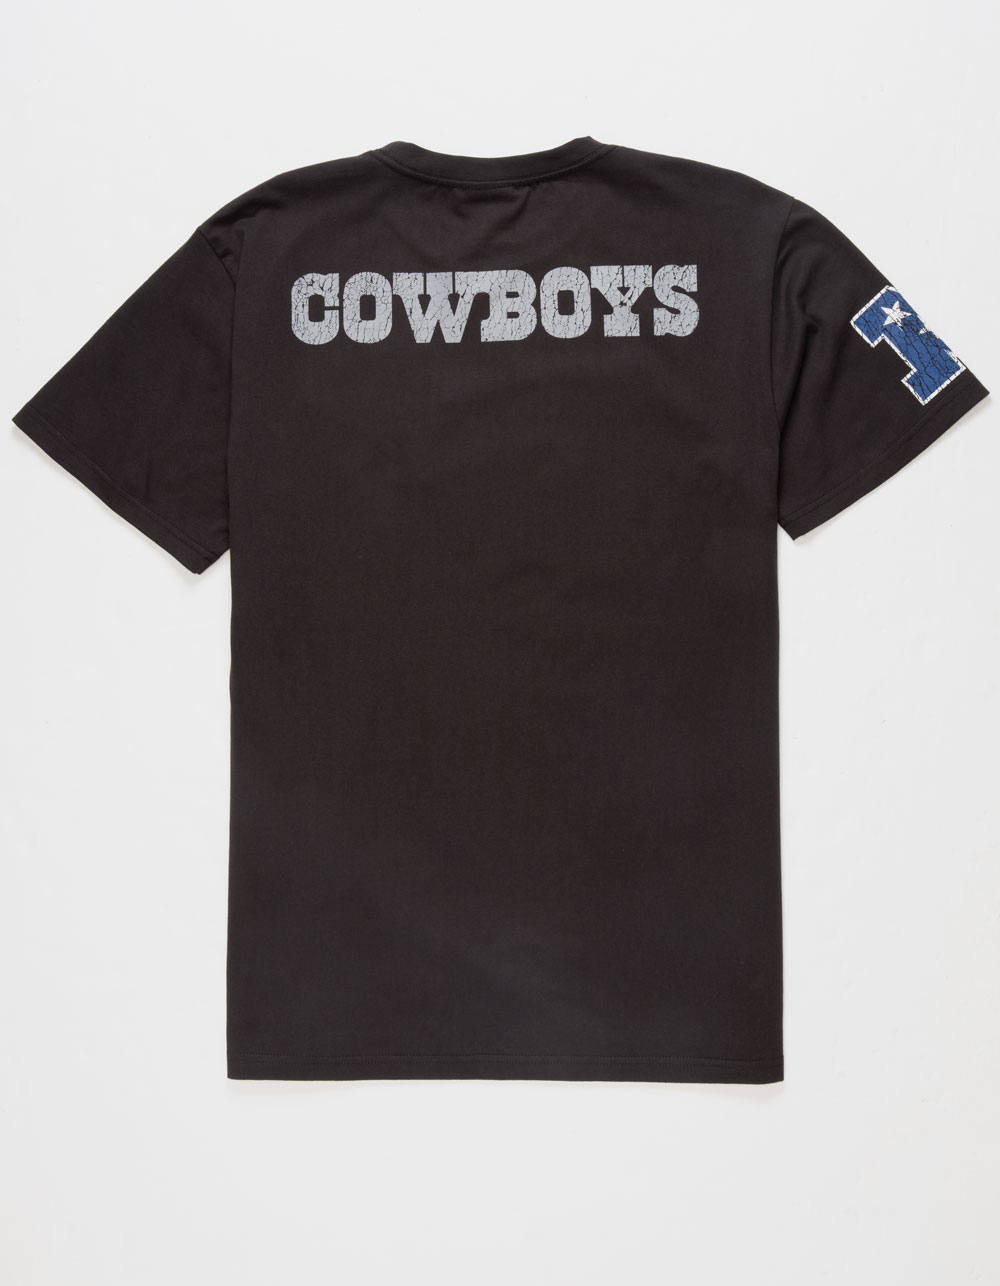 black dallas cowboys t shirt